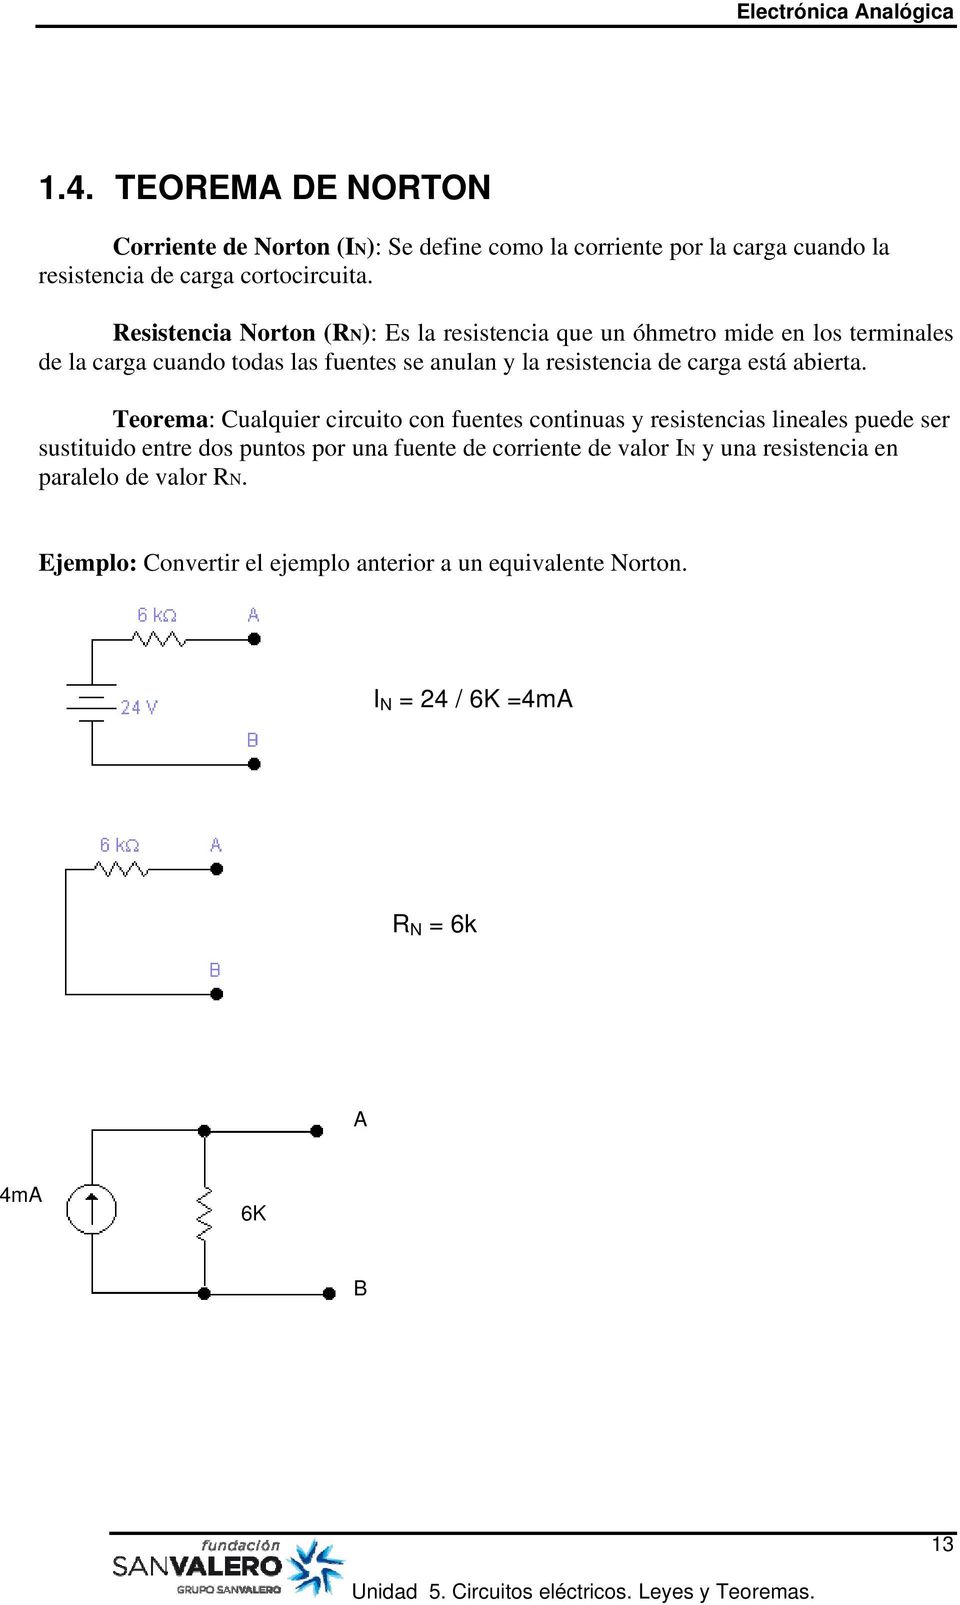 Teorema: Cualquier circuito con fuentes continuas y resistencias lineales puede ser sustituido entre dos puntos por una fuente de corriente de valor IN y una